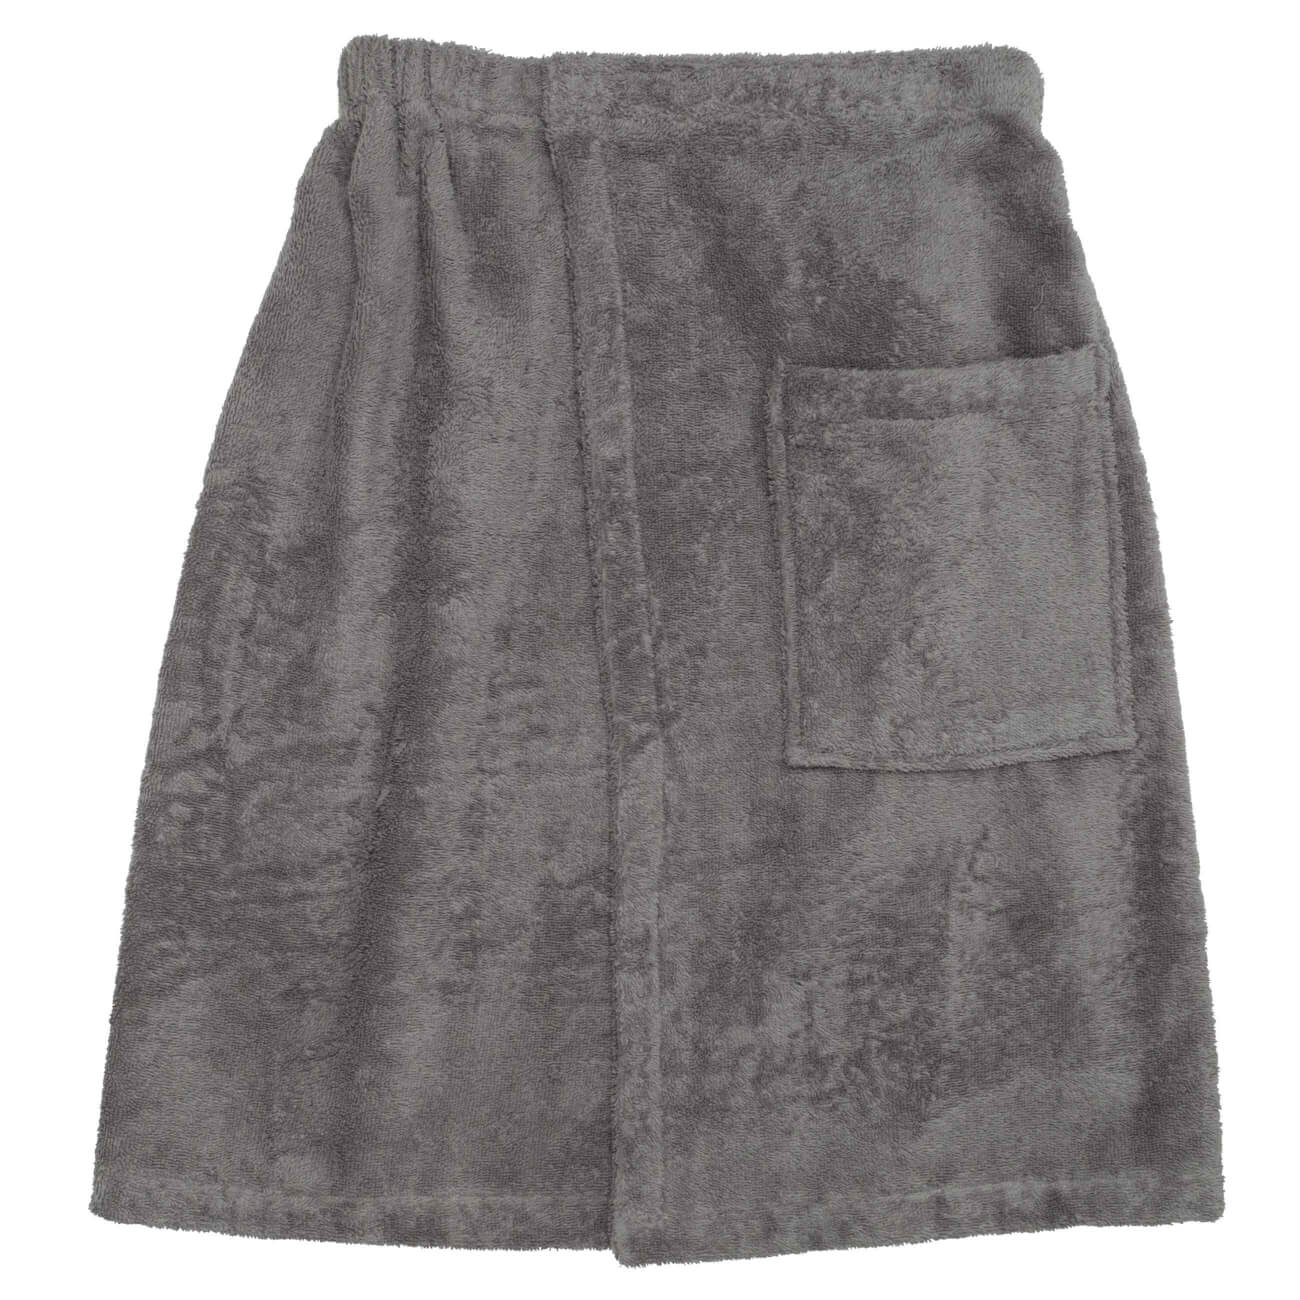 Полотенце-килт мужское, 70х160 см, на липучке, хлопок, темно-серое, Spa towel натуральное бумажное полотенце tork